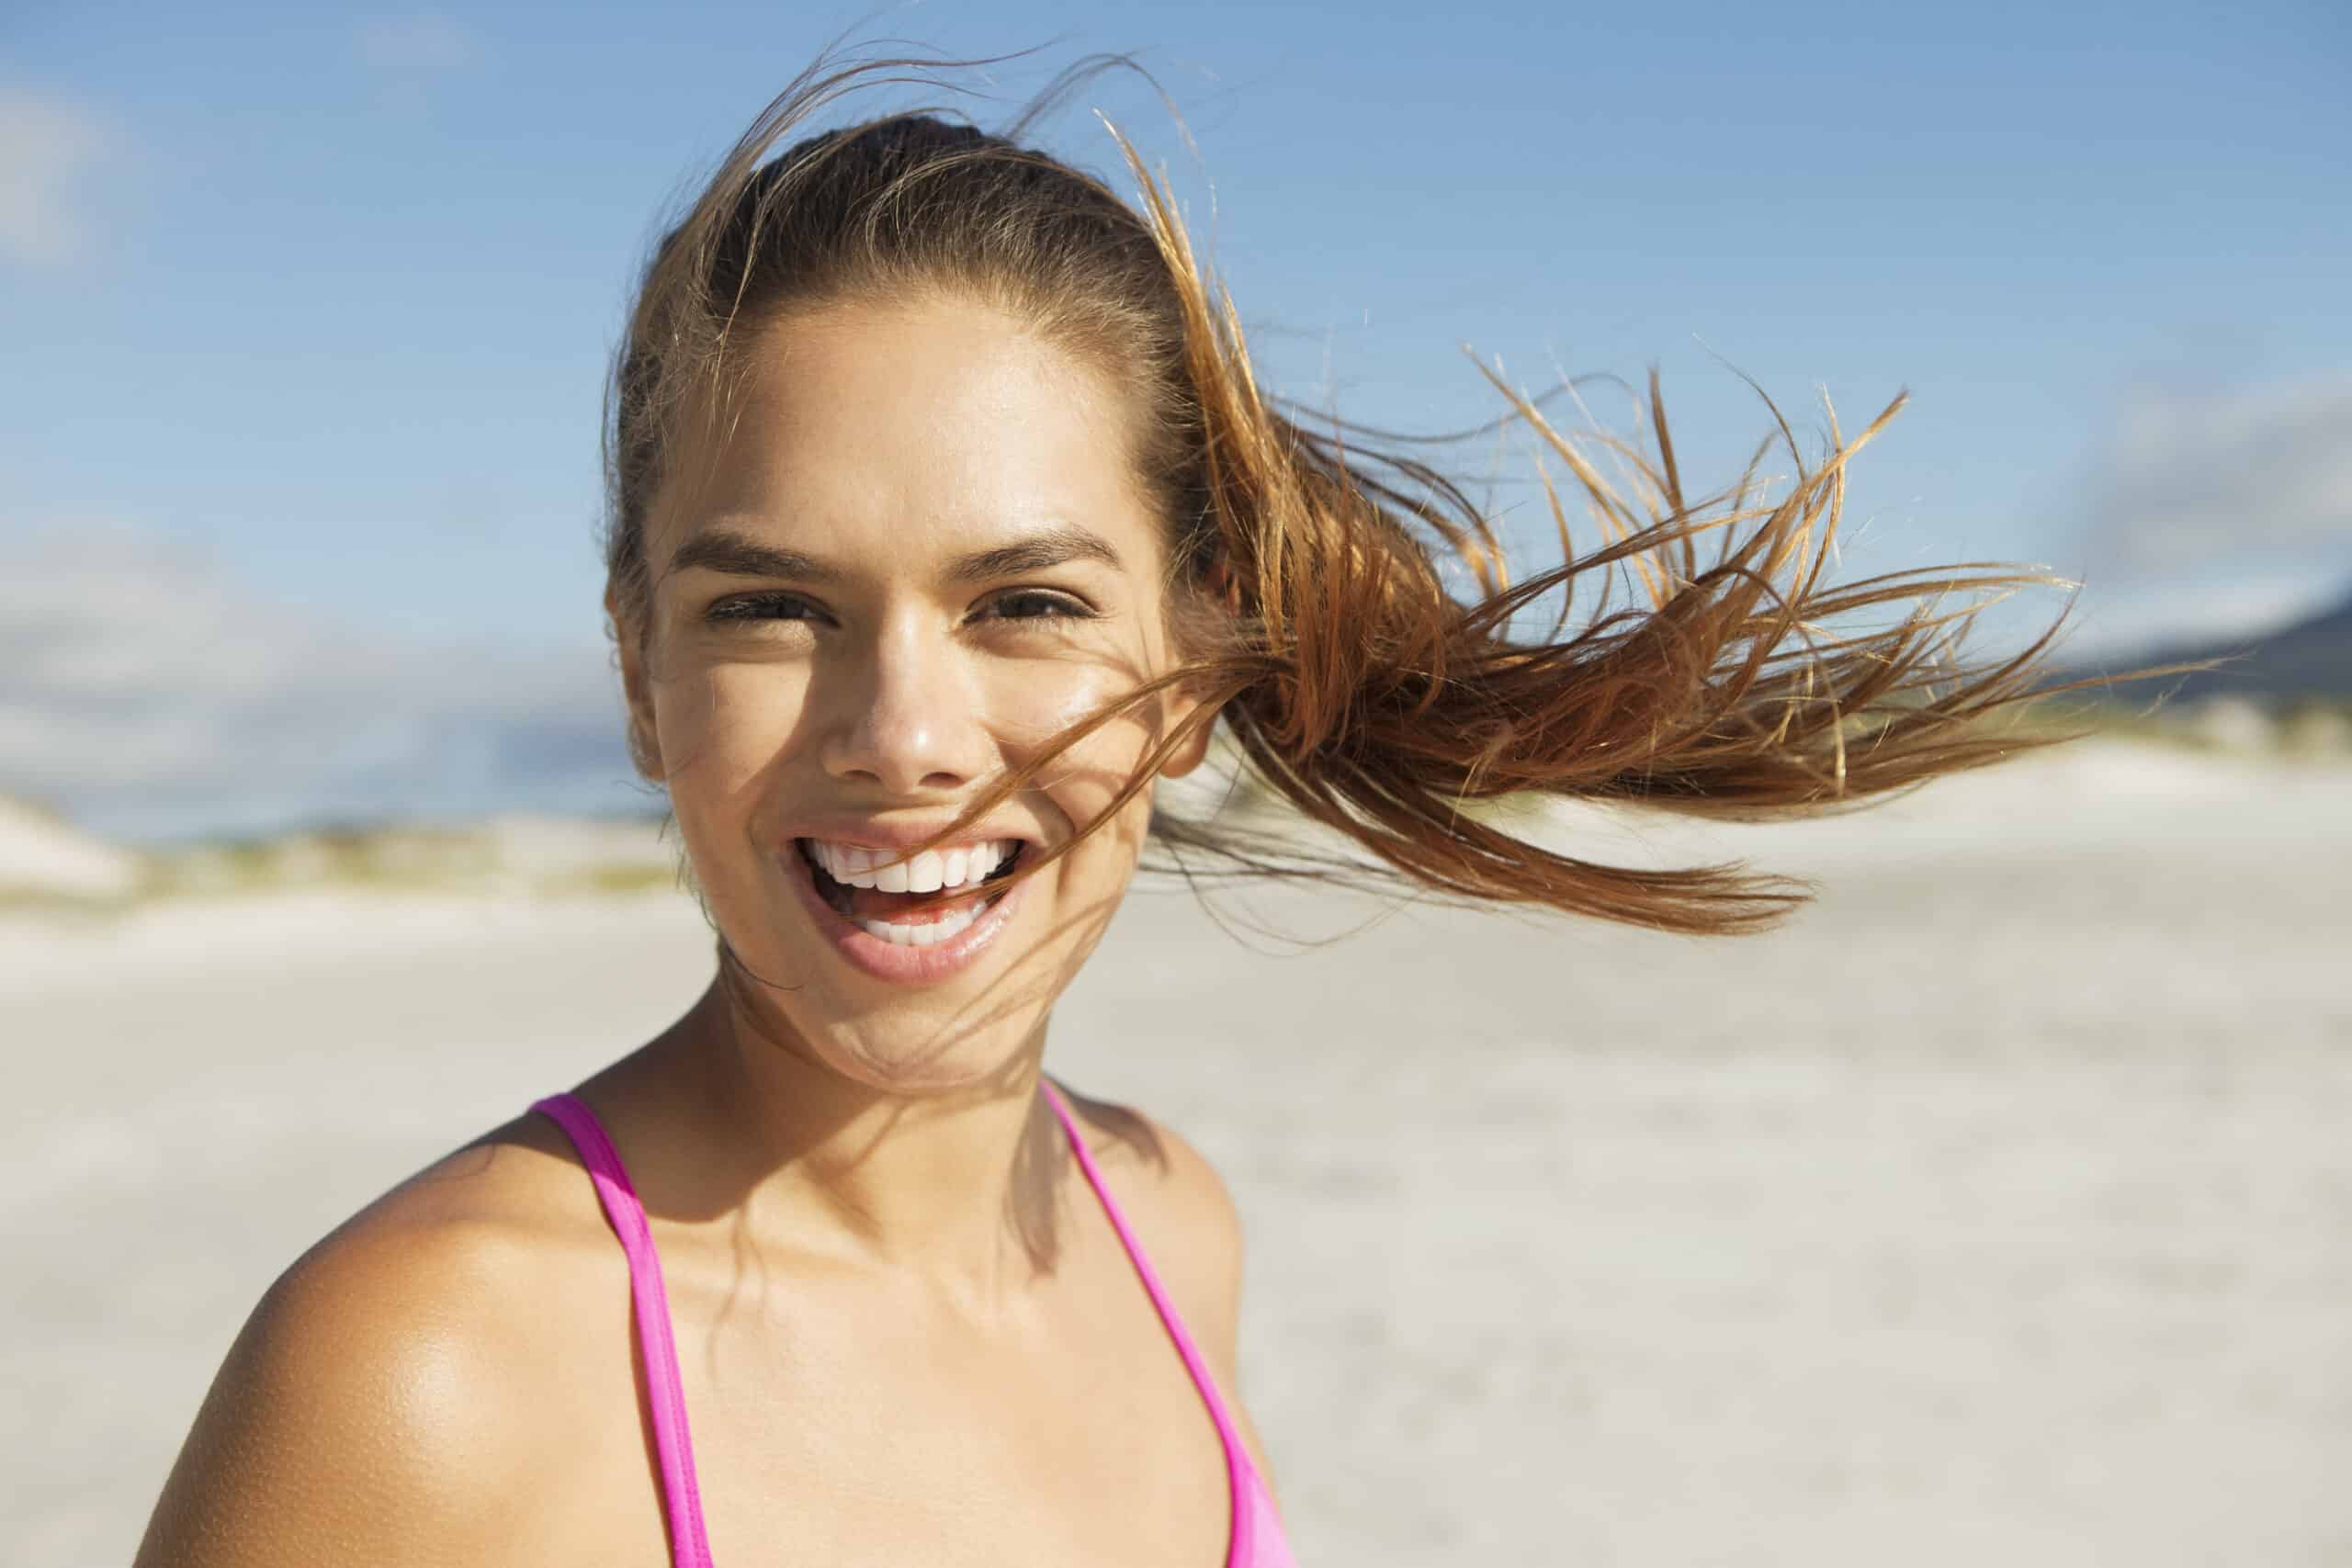 Eine fröhliche junge Frau mit wallendem braunem Haar lächelt breit an einem sonnigen Strand und trägt ein rosa Tanktop. Ihr Haar weht in der Brise vor dem Hintergrund eines klaren Himmels und eines sandigen Ufers. © Fotografie Tomas Rodriguez